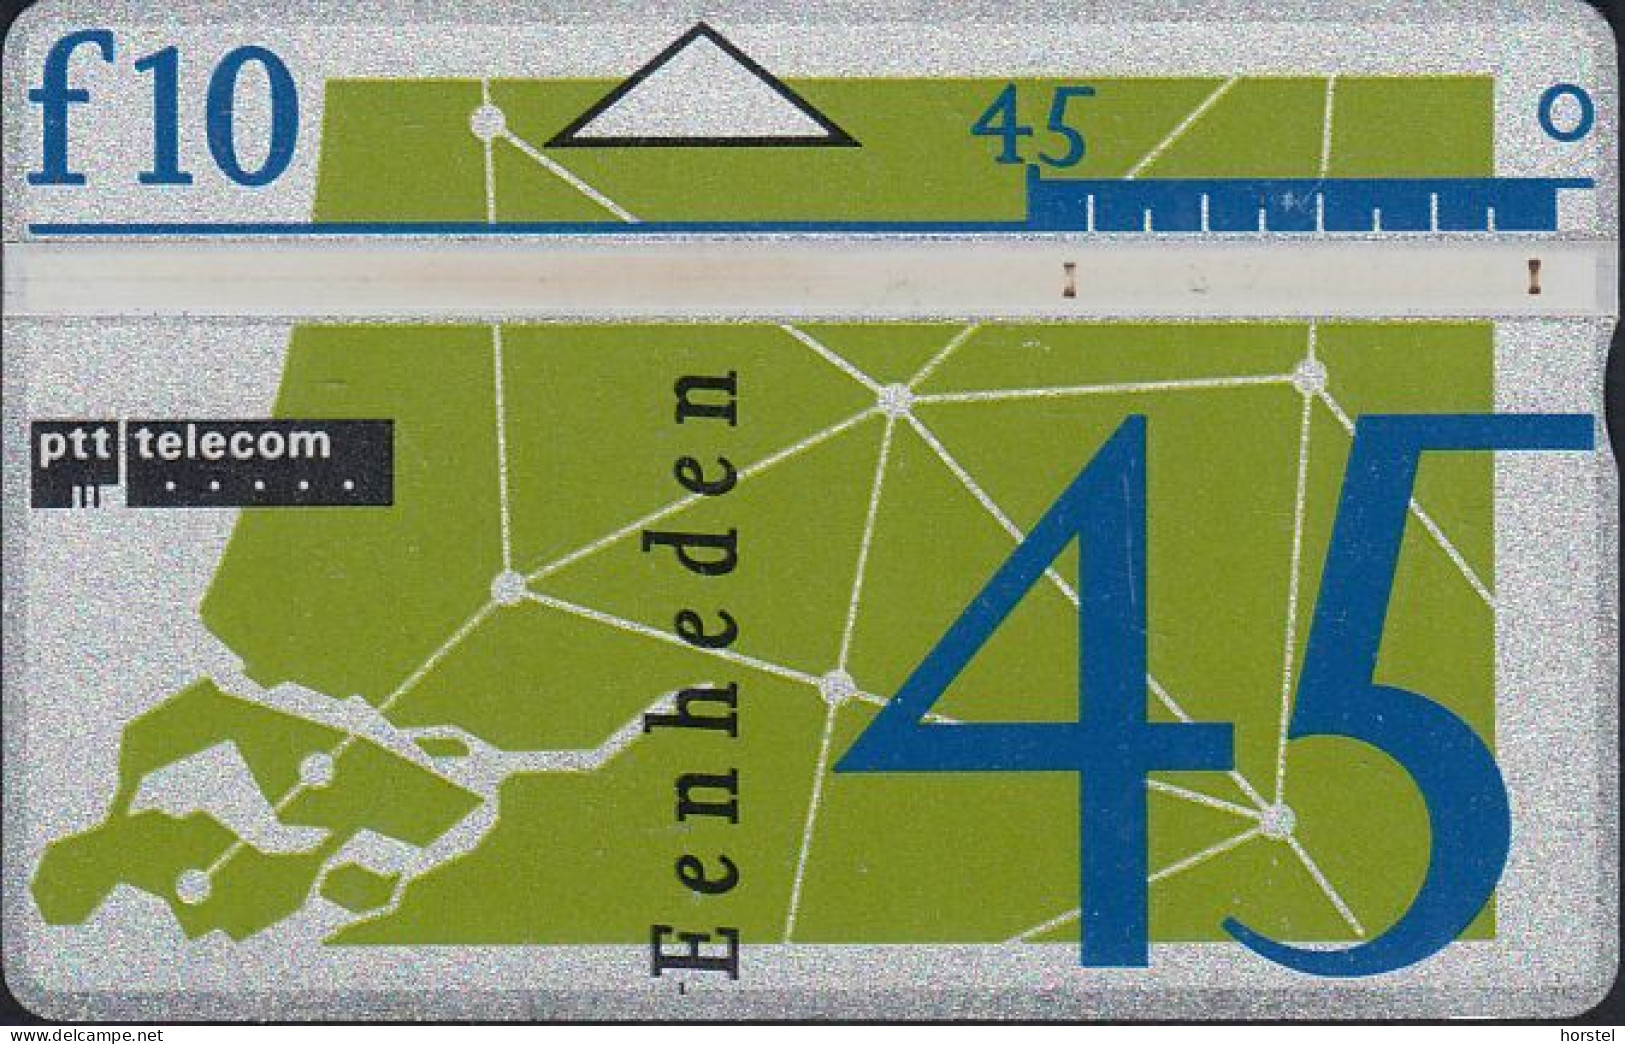 Netherland - L&G 1991 7.Standard Serie - D019B - (110B) Network - Públicas